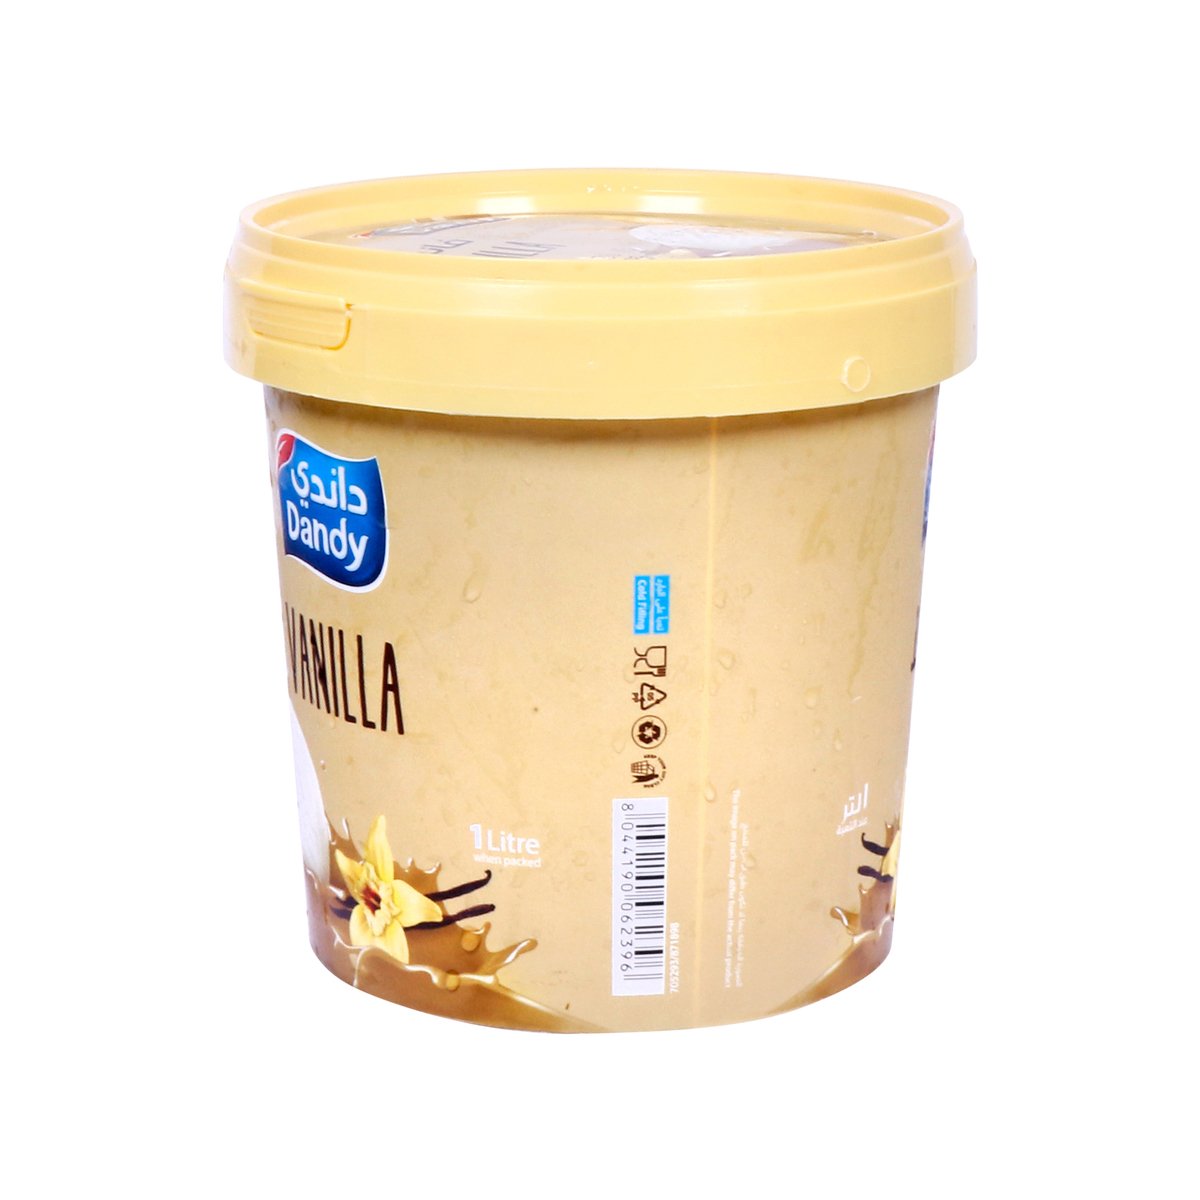 Dandy Vanilla Ice Cream 1Litre